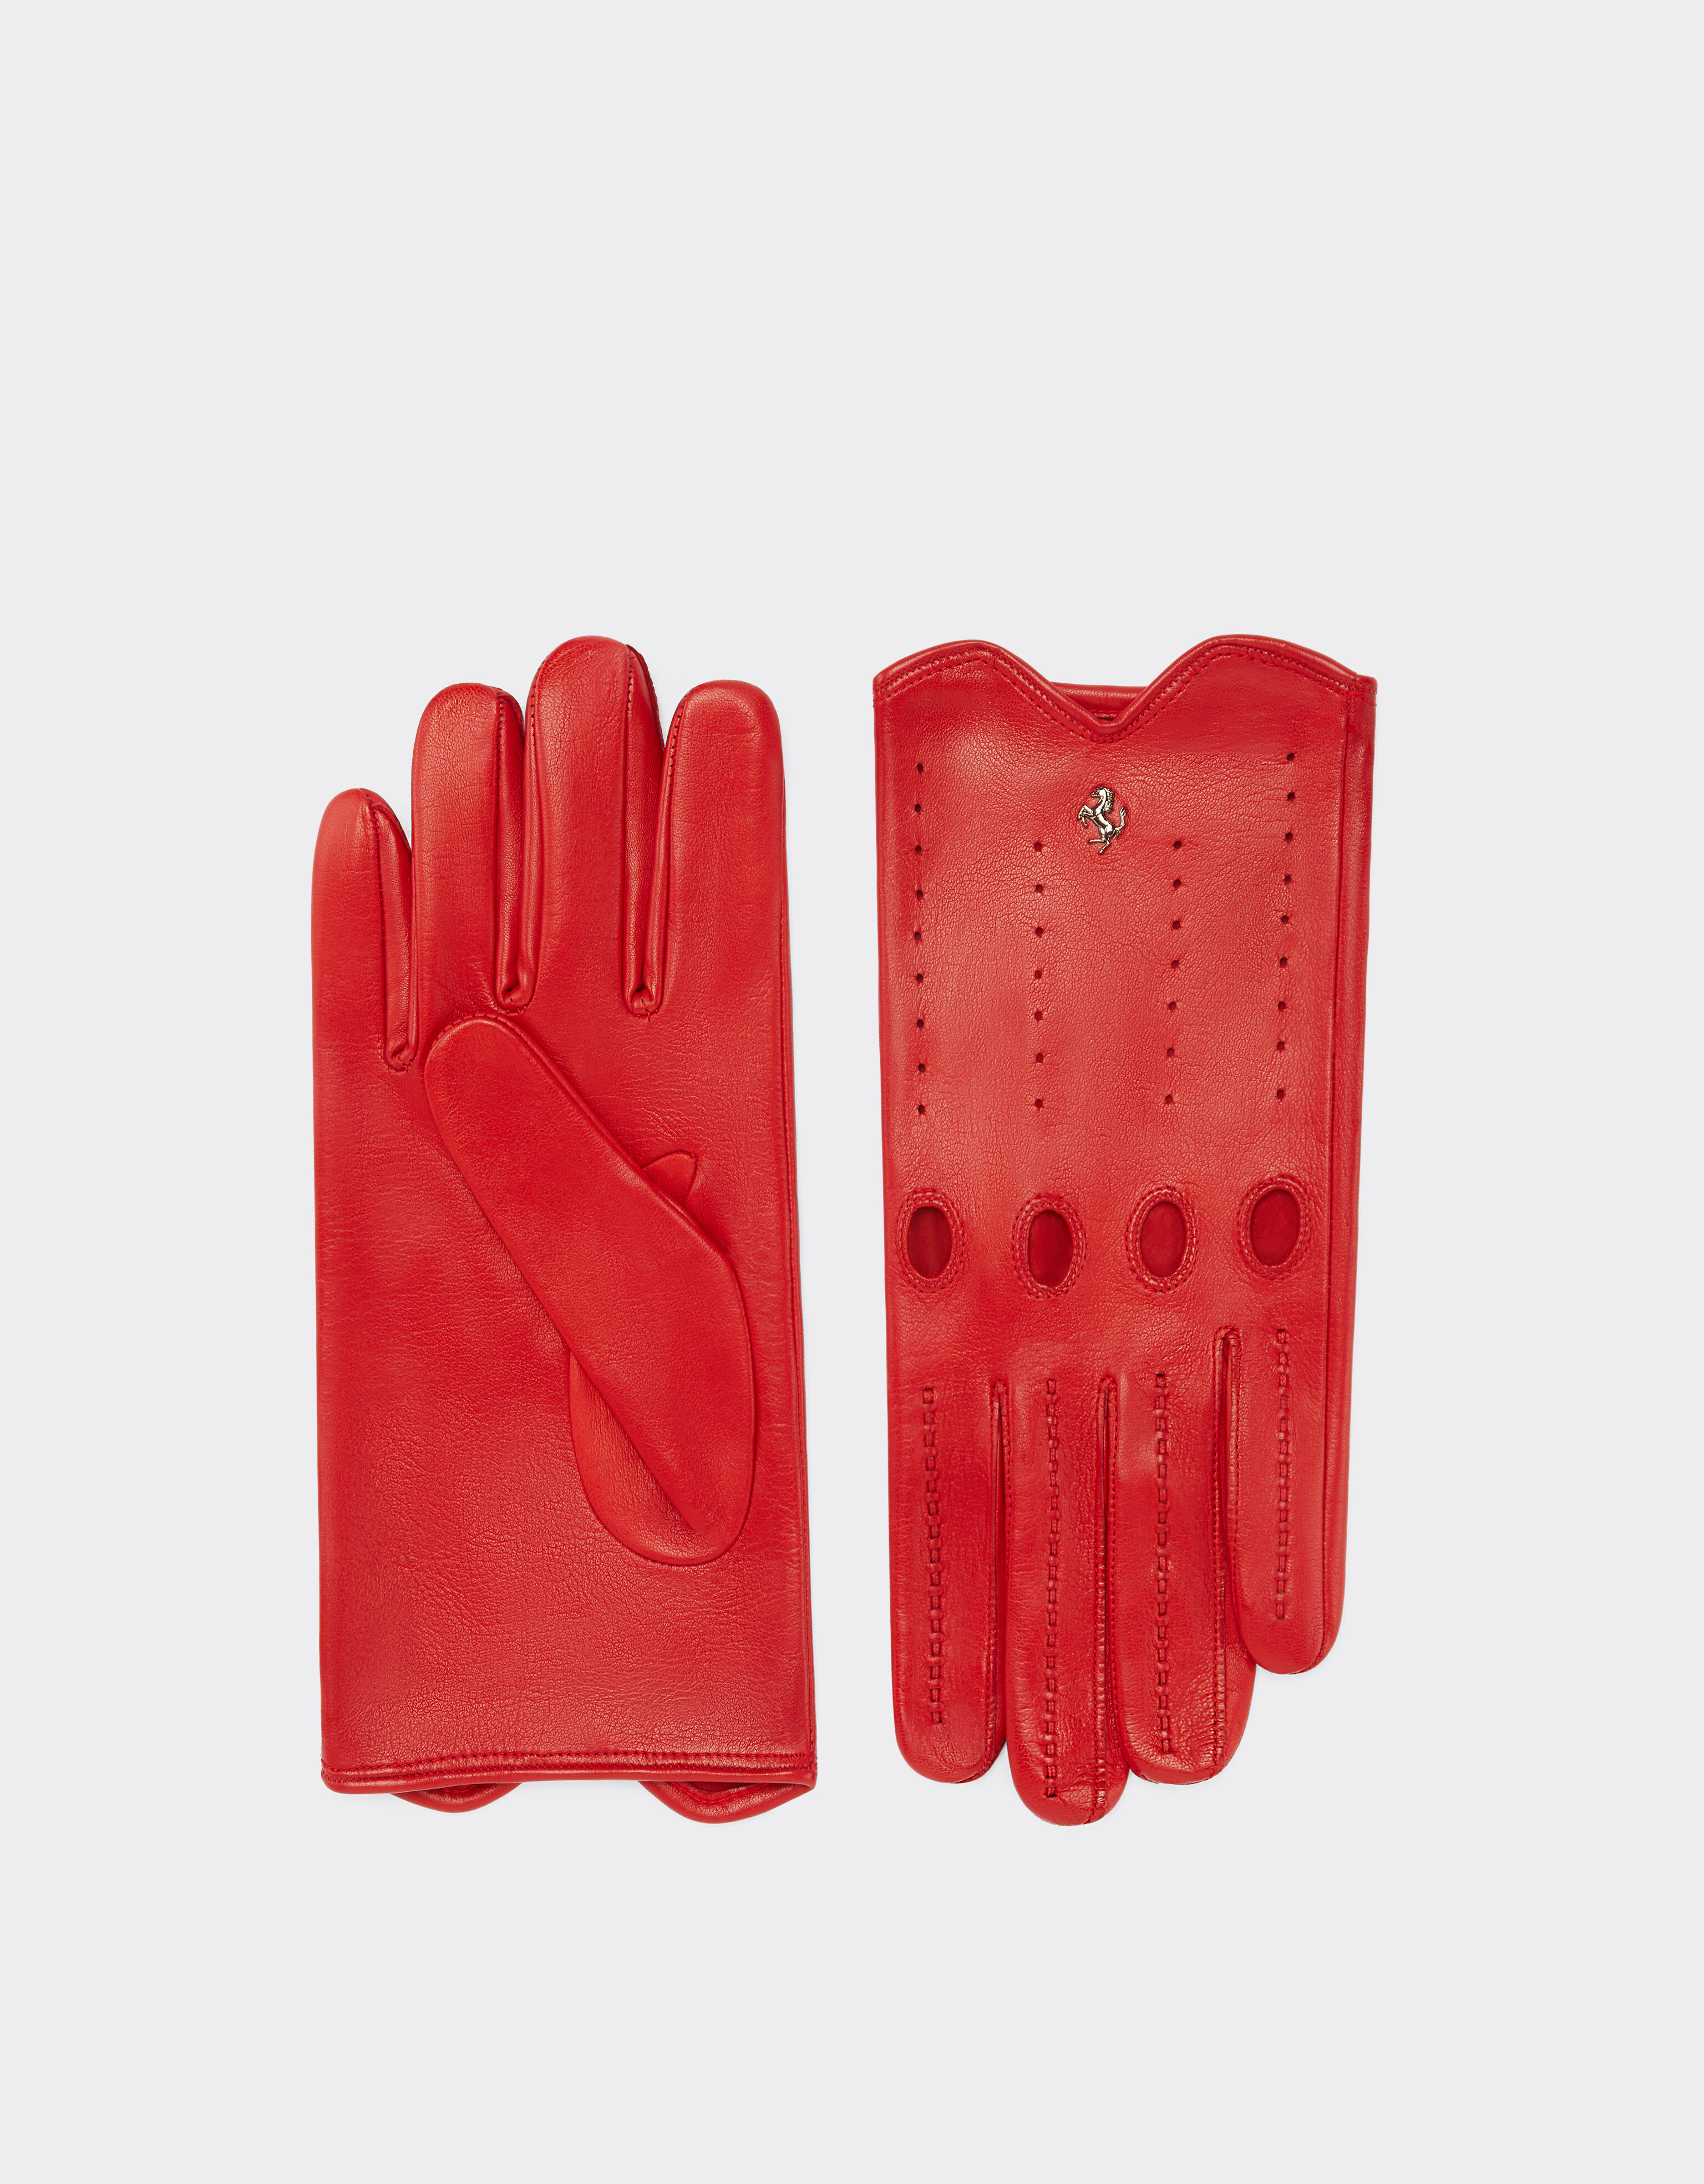 Ferrari Nappa leather driving gloves Rosso Corsa 47148f